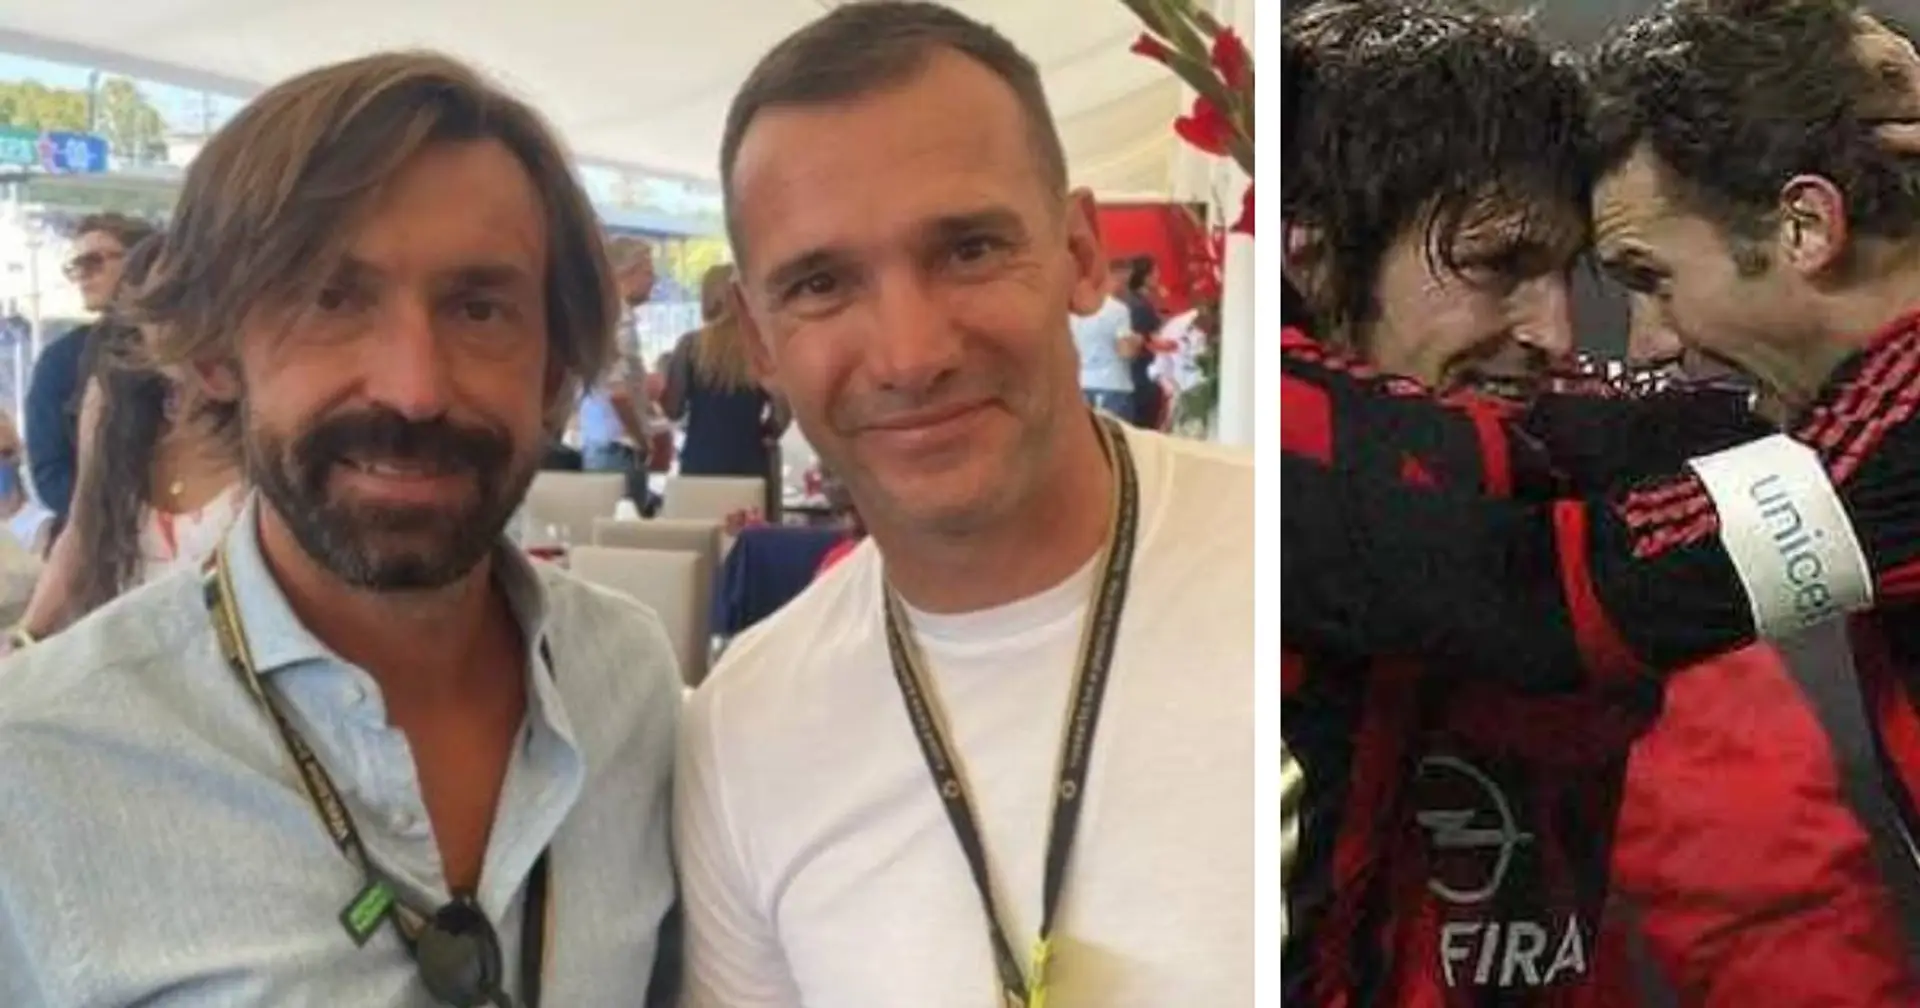 Una fame esagerata e tanto 'cazzeggio': Sheva svela i lati nascosti dell'ex Milan Andrea Pirlo 